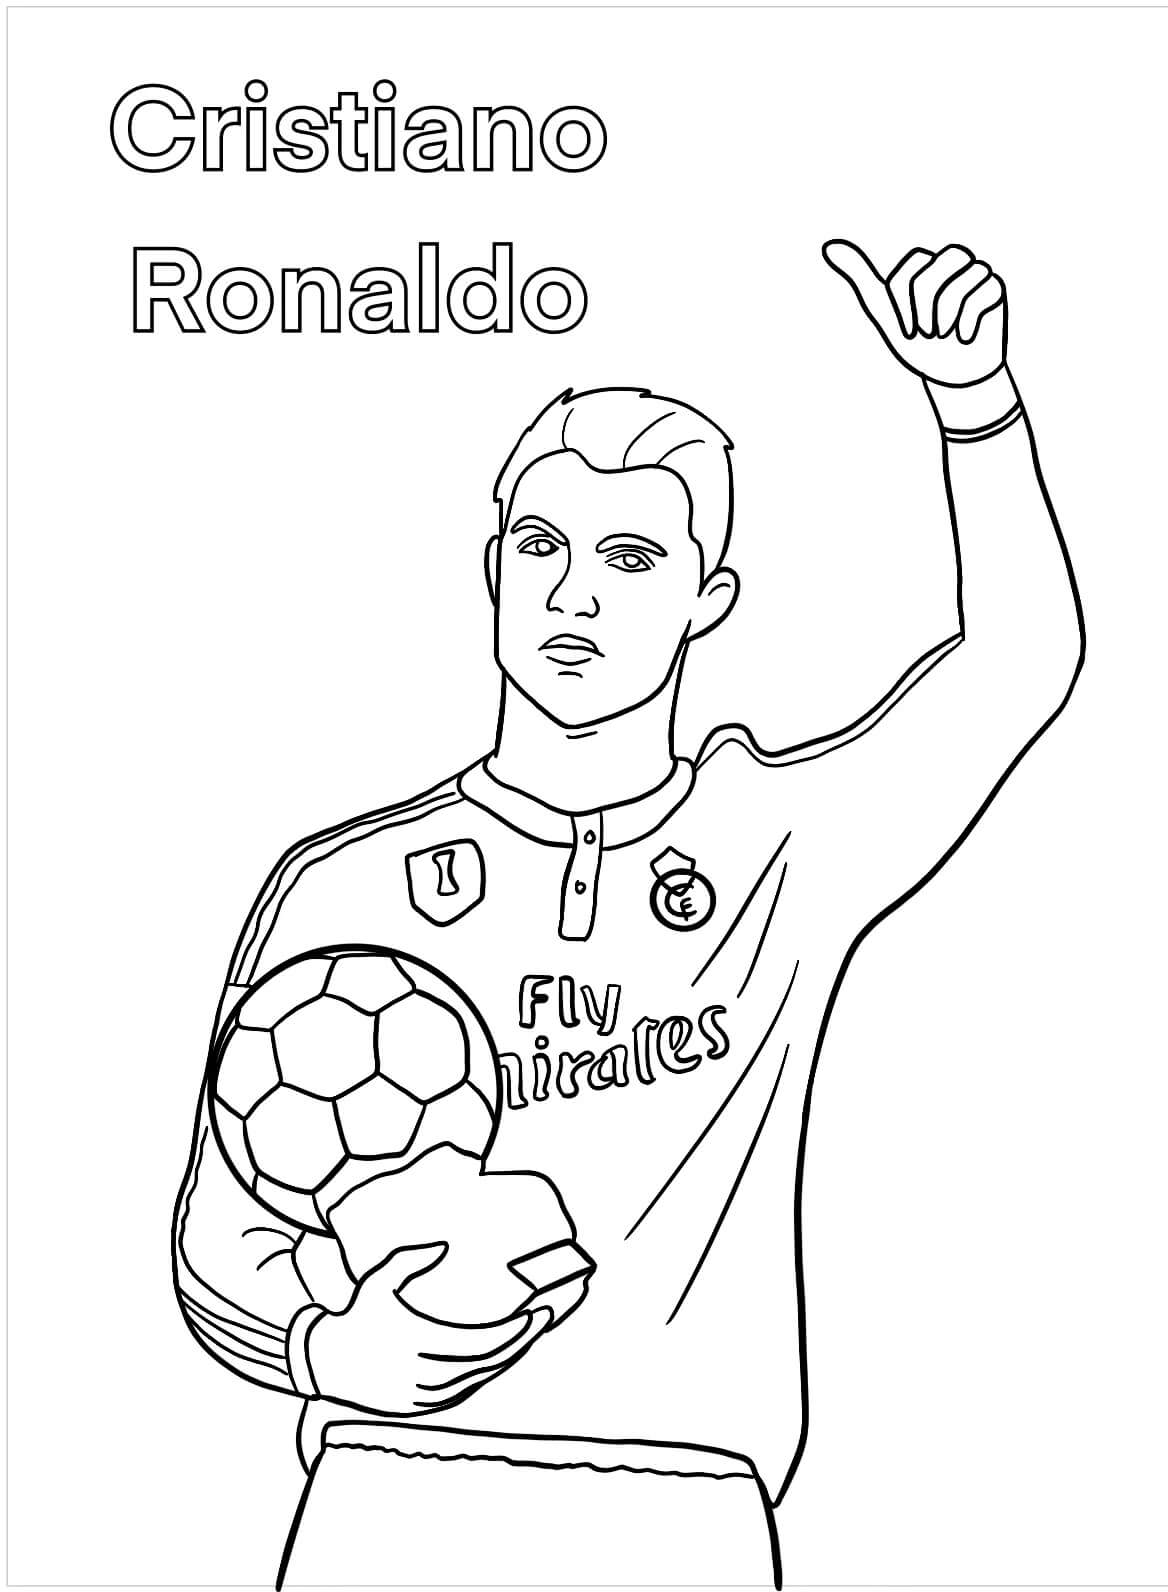 Målarbild Cristiano Ronaldo Håller en Boll